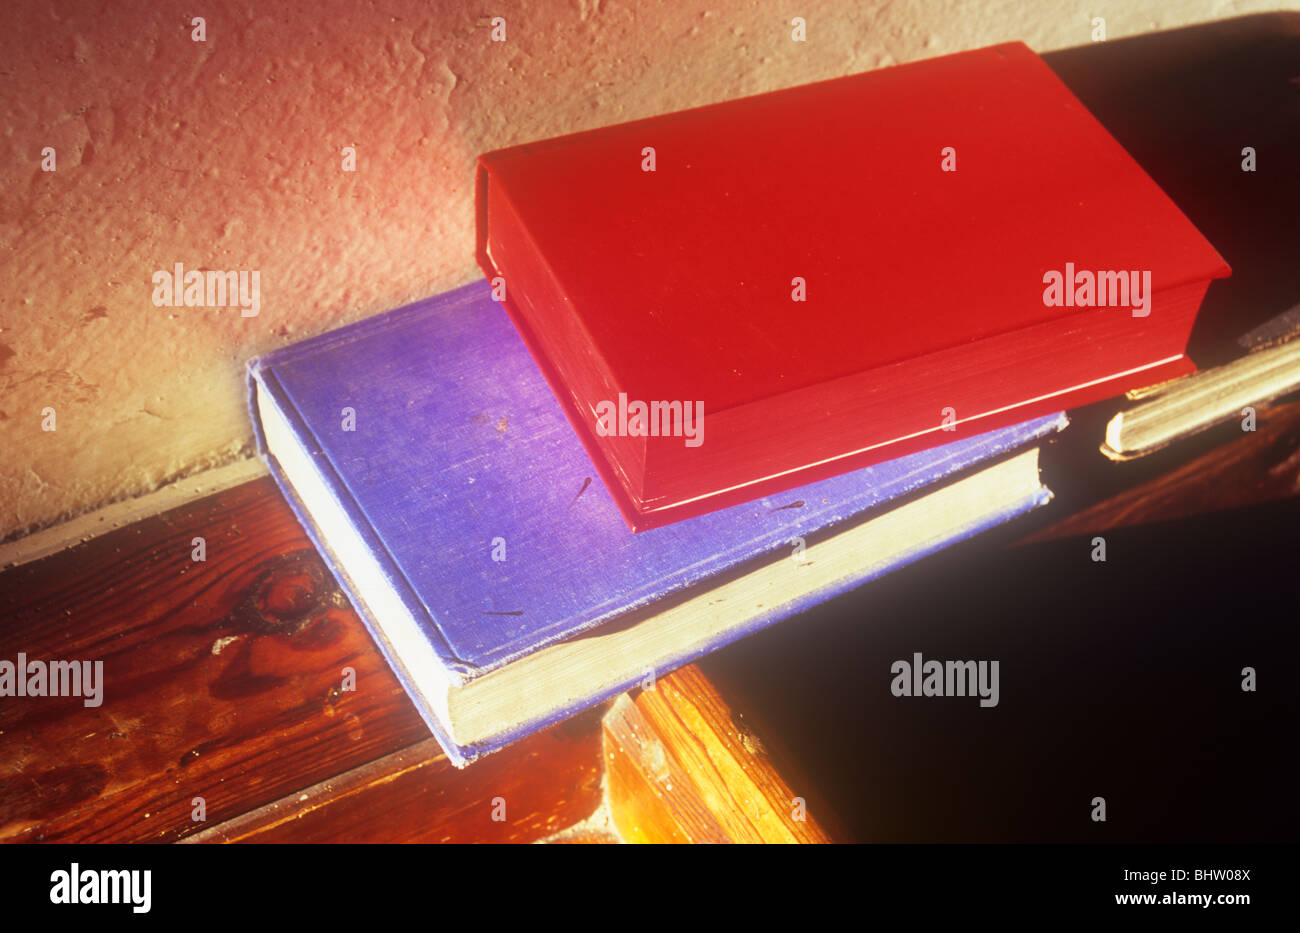 Eine rote und eine blaue Buch auf hölzernen Sims in warmen Abend Sonnenlicht und werfen lange Schatten auf strukturierte Creme Wand sitzen Stockfoto